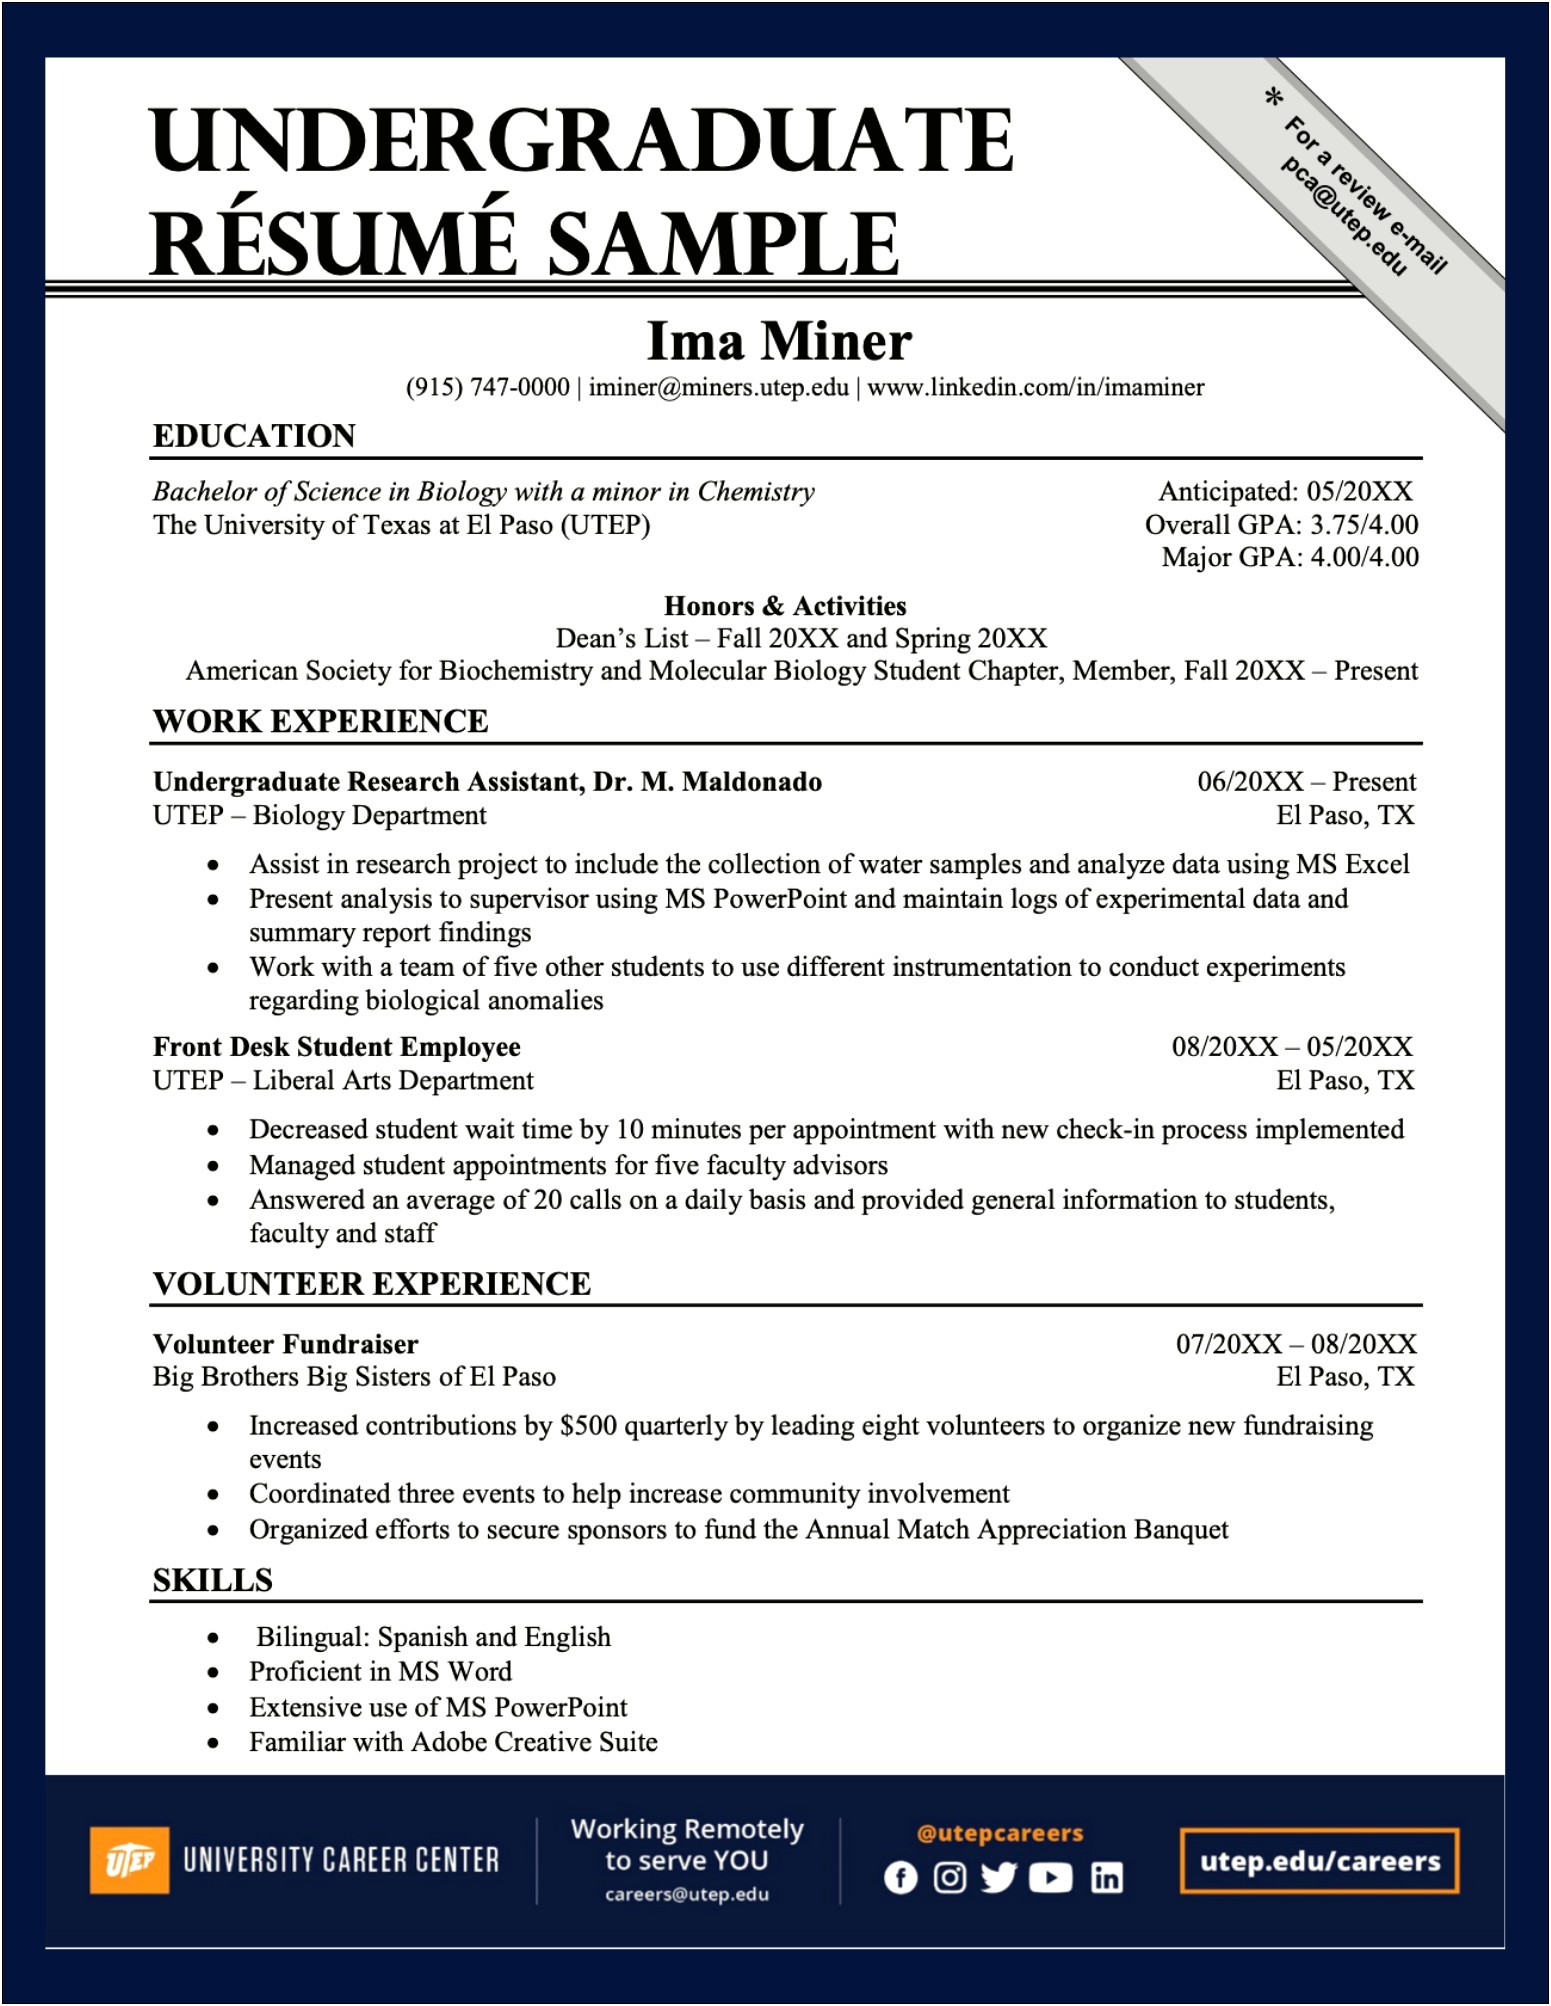 Send Resume In Word Or Pdf Format